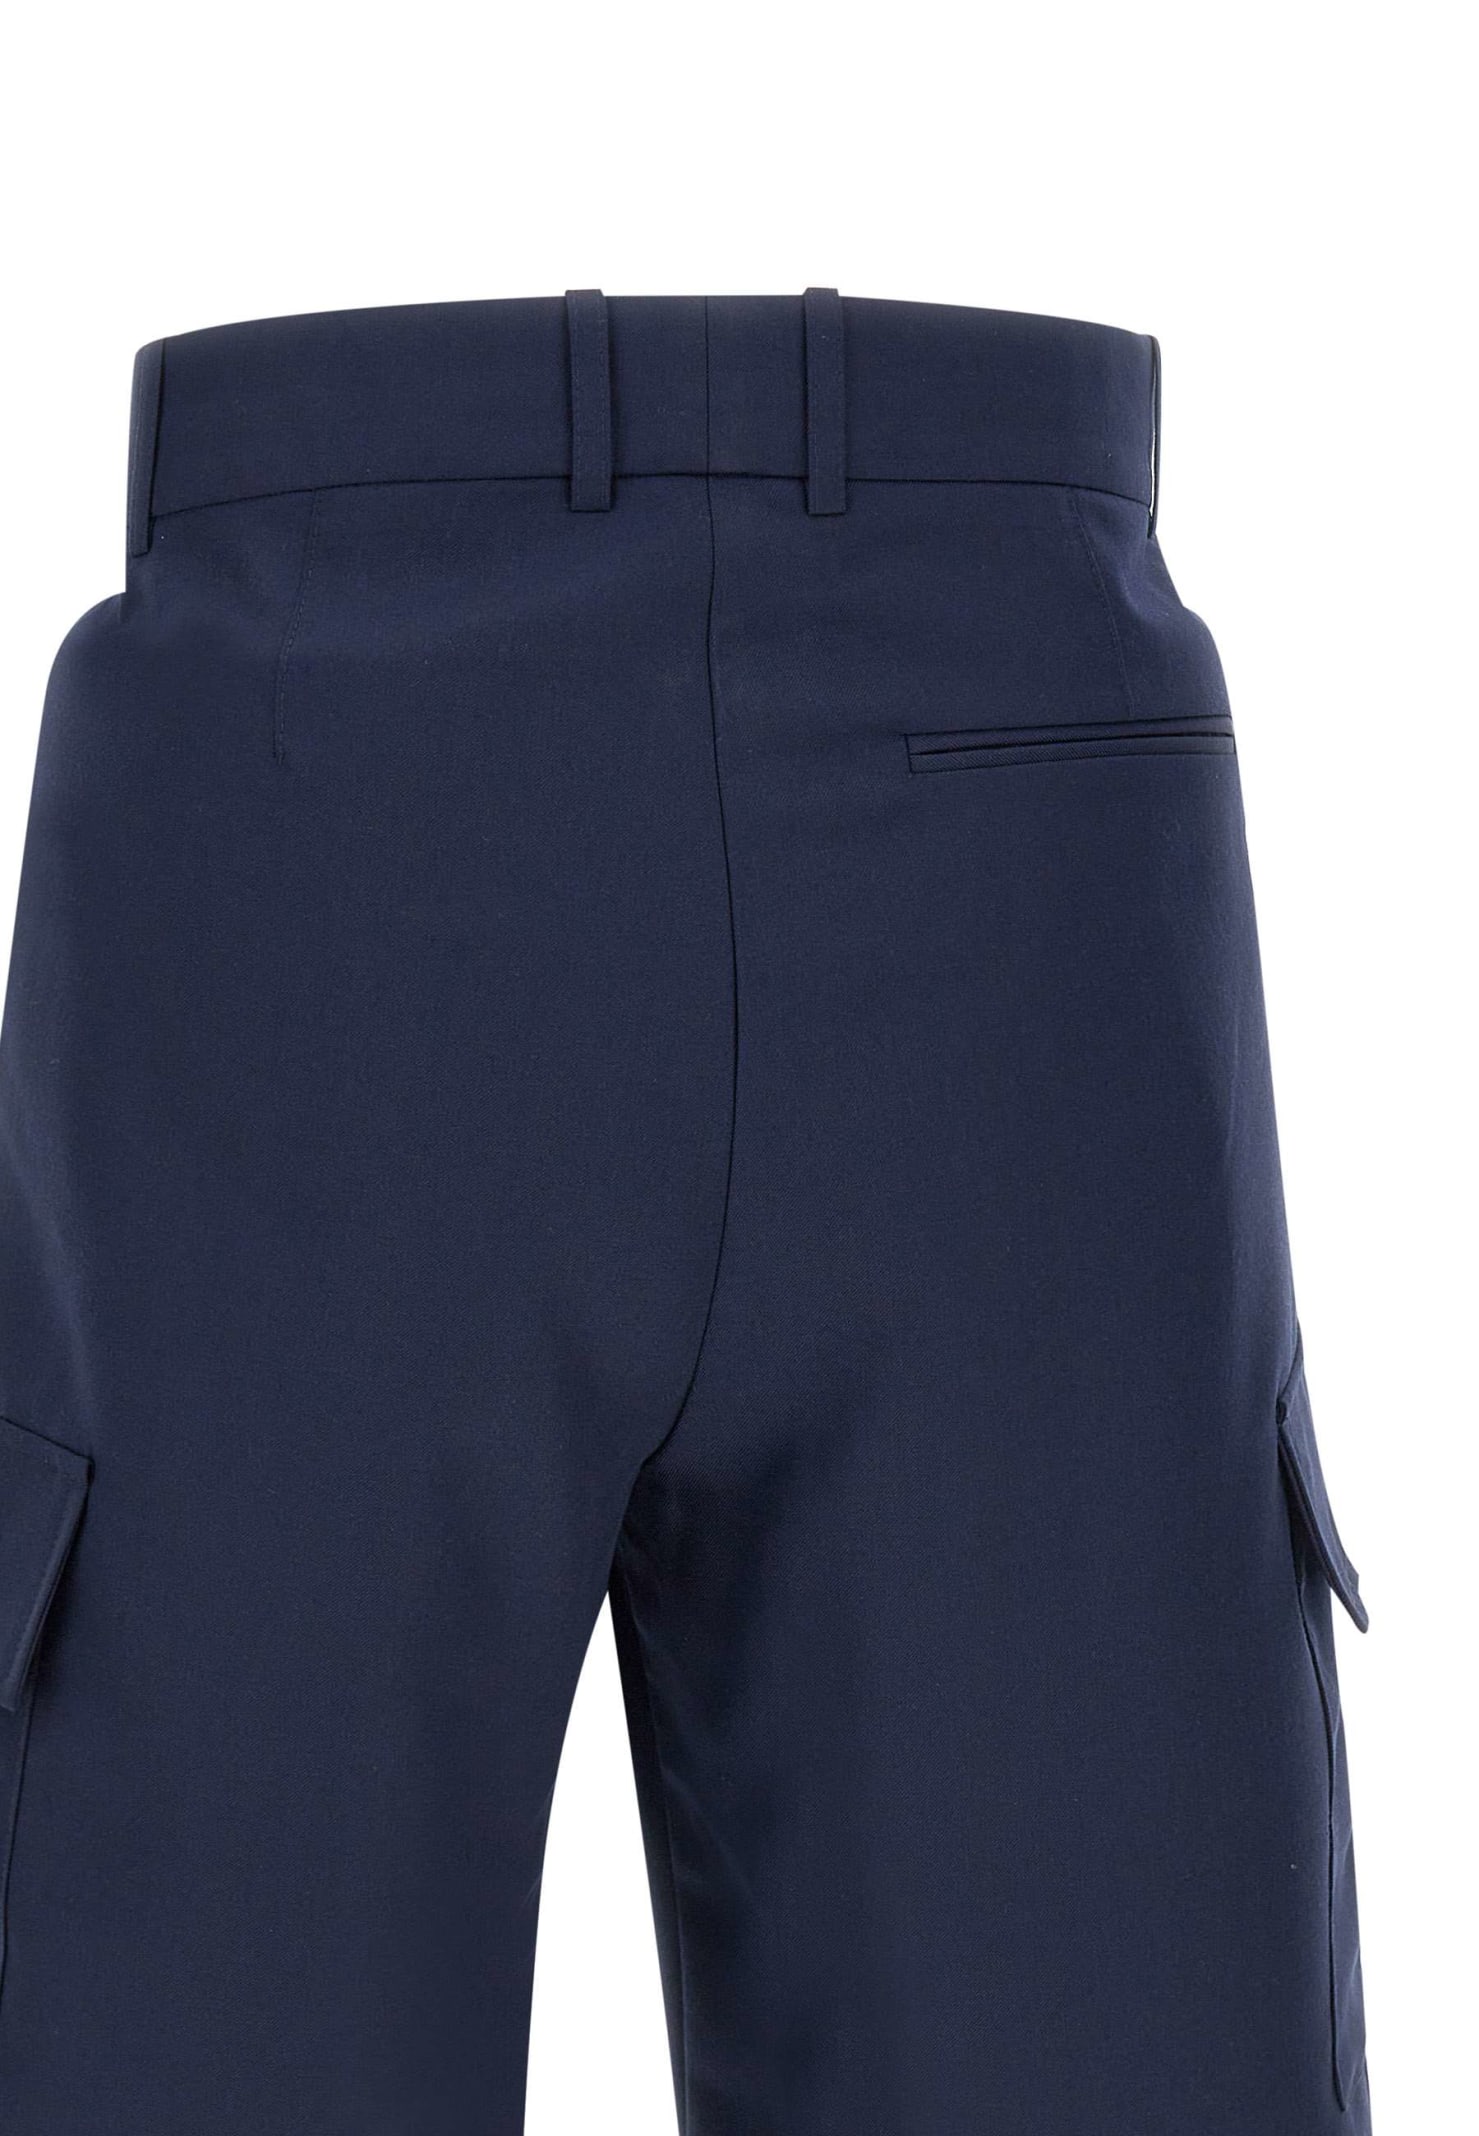 Shop Drôle De Monsieur Le Shorts Cargo Laine Fresh Wool Shorts In Blue